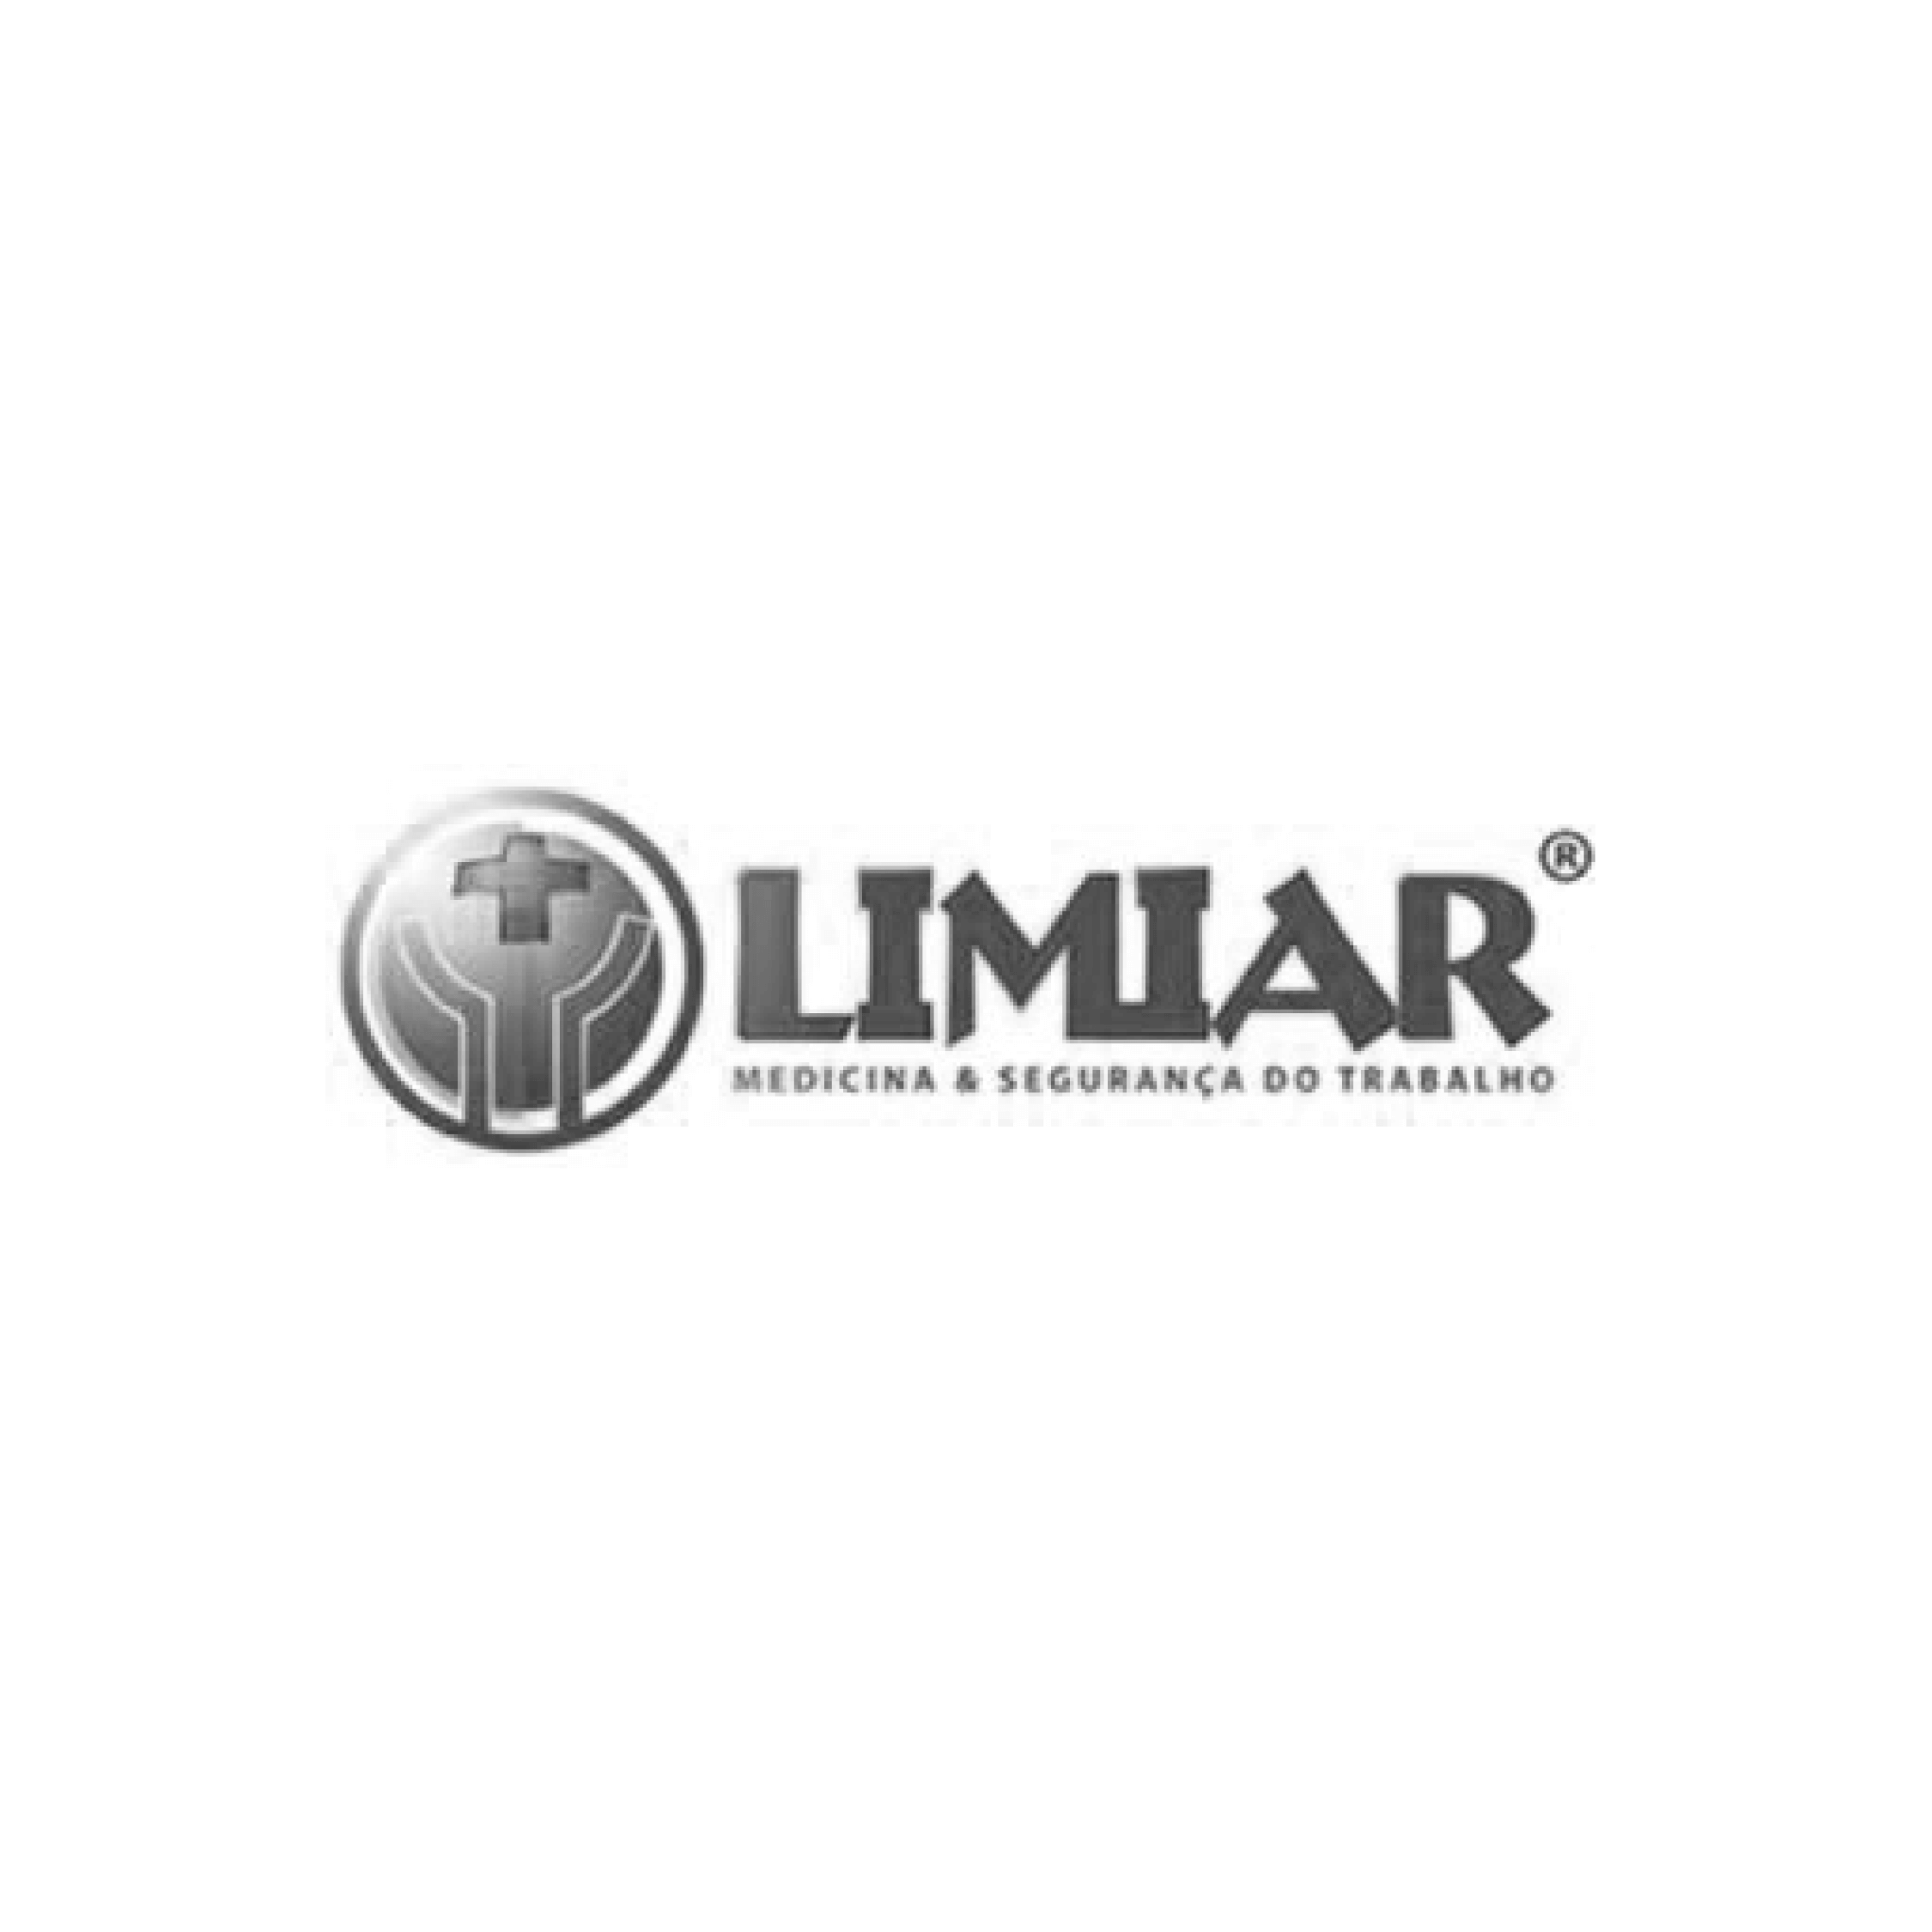 logo-cliente-08-limiar.png